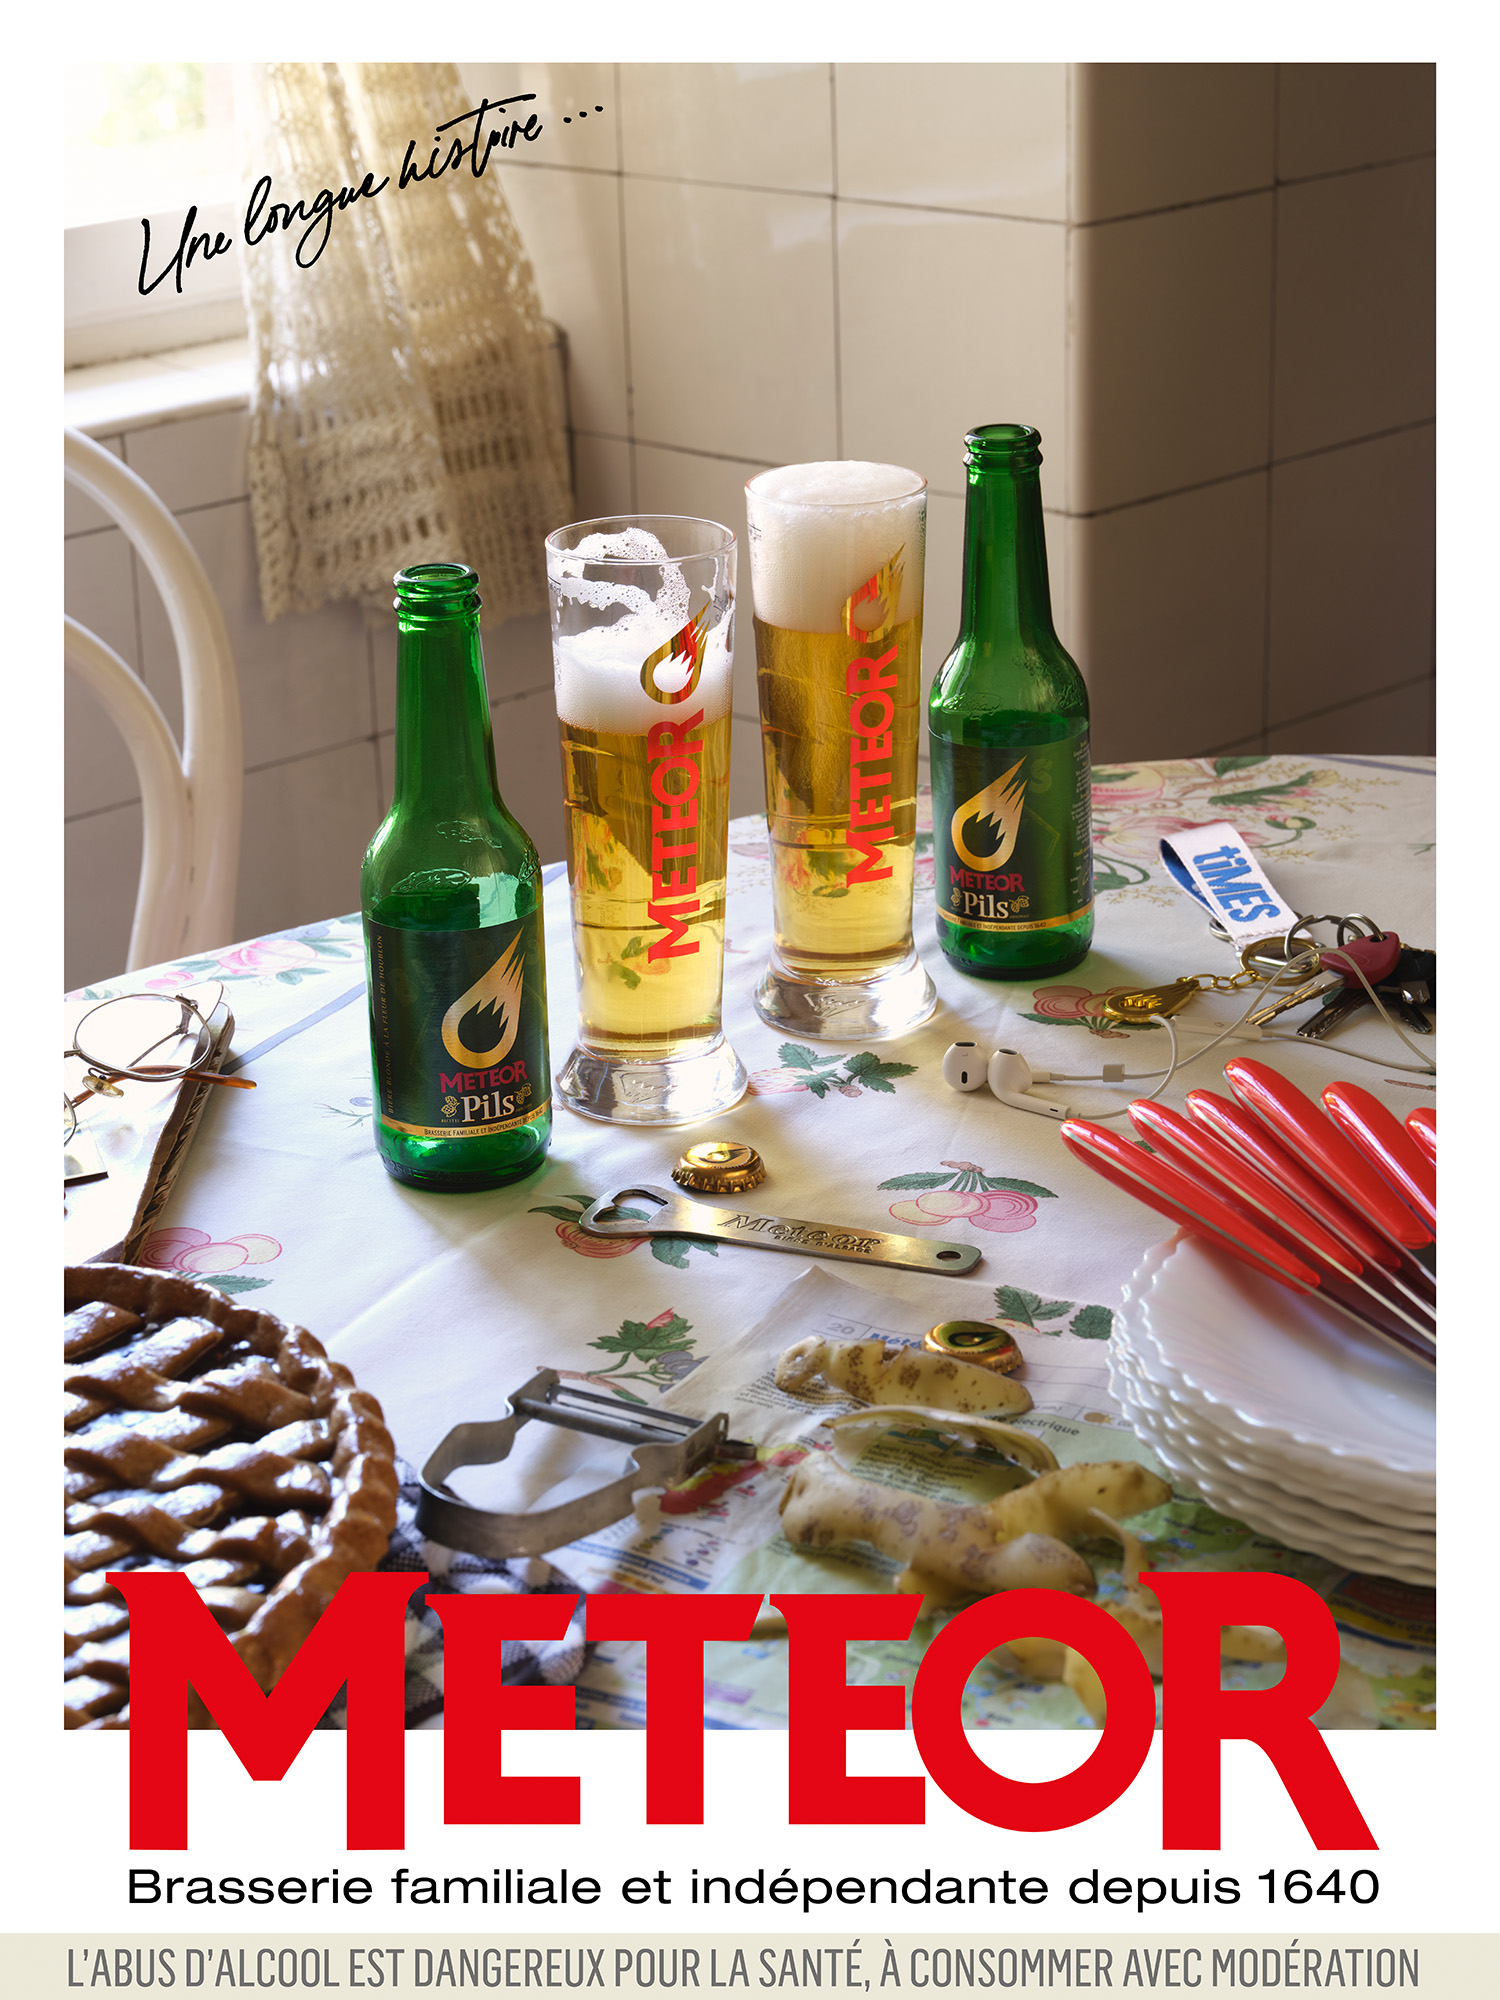 3ème image de la nouvelle campagne de la marque Meteor